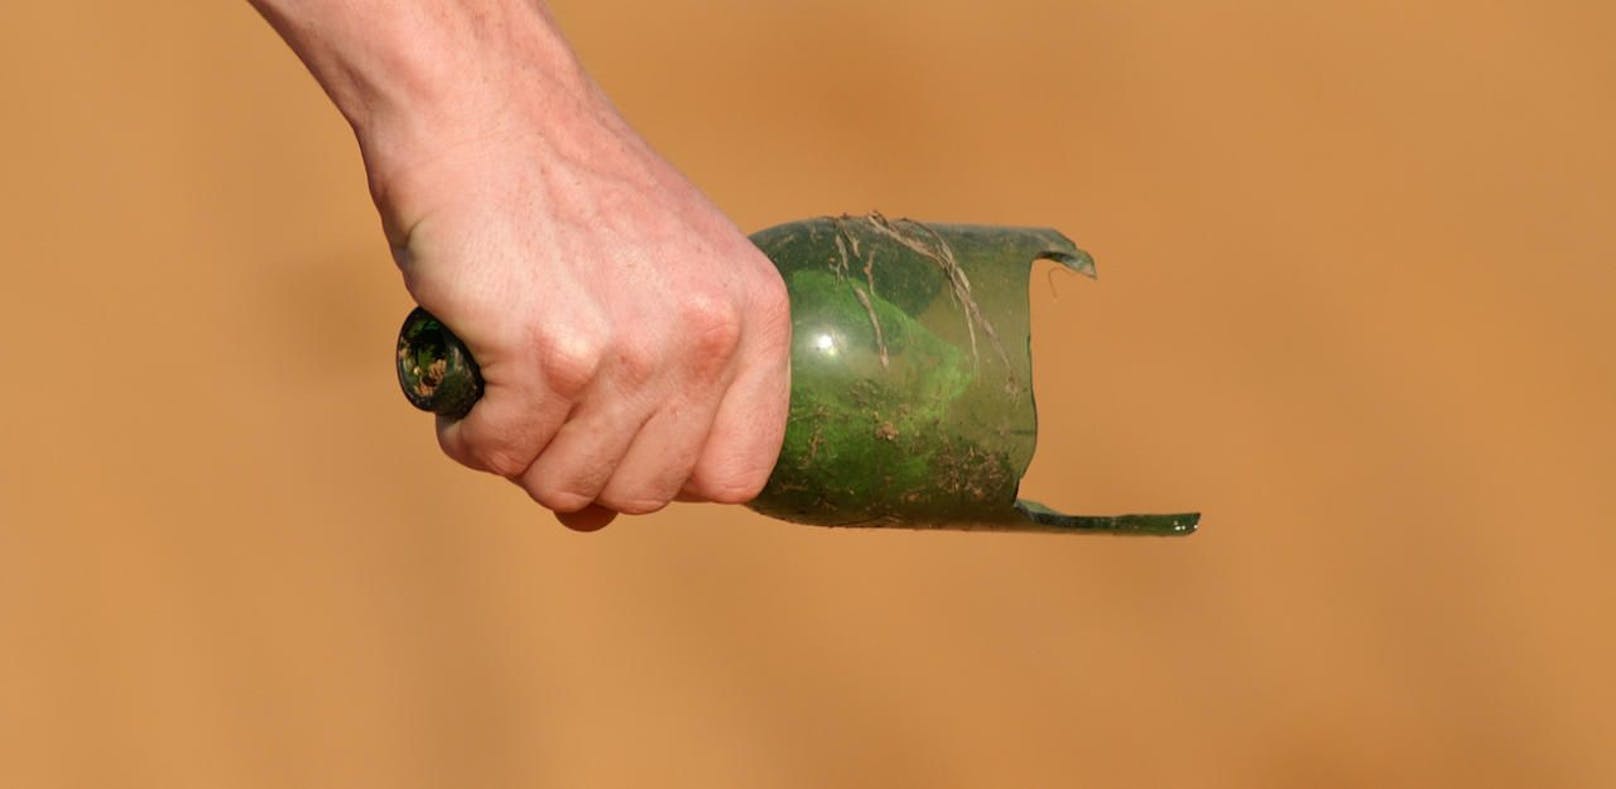 Ein Wiener benutze eine abgebrochene Bierflasche als Waffe (Symbolfoto).